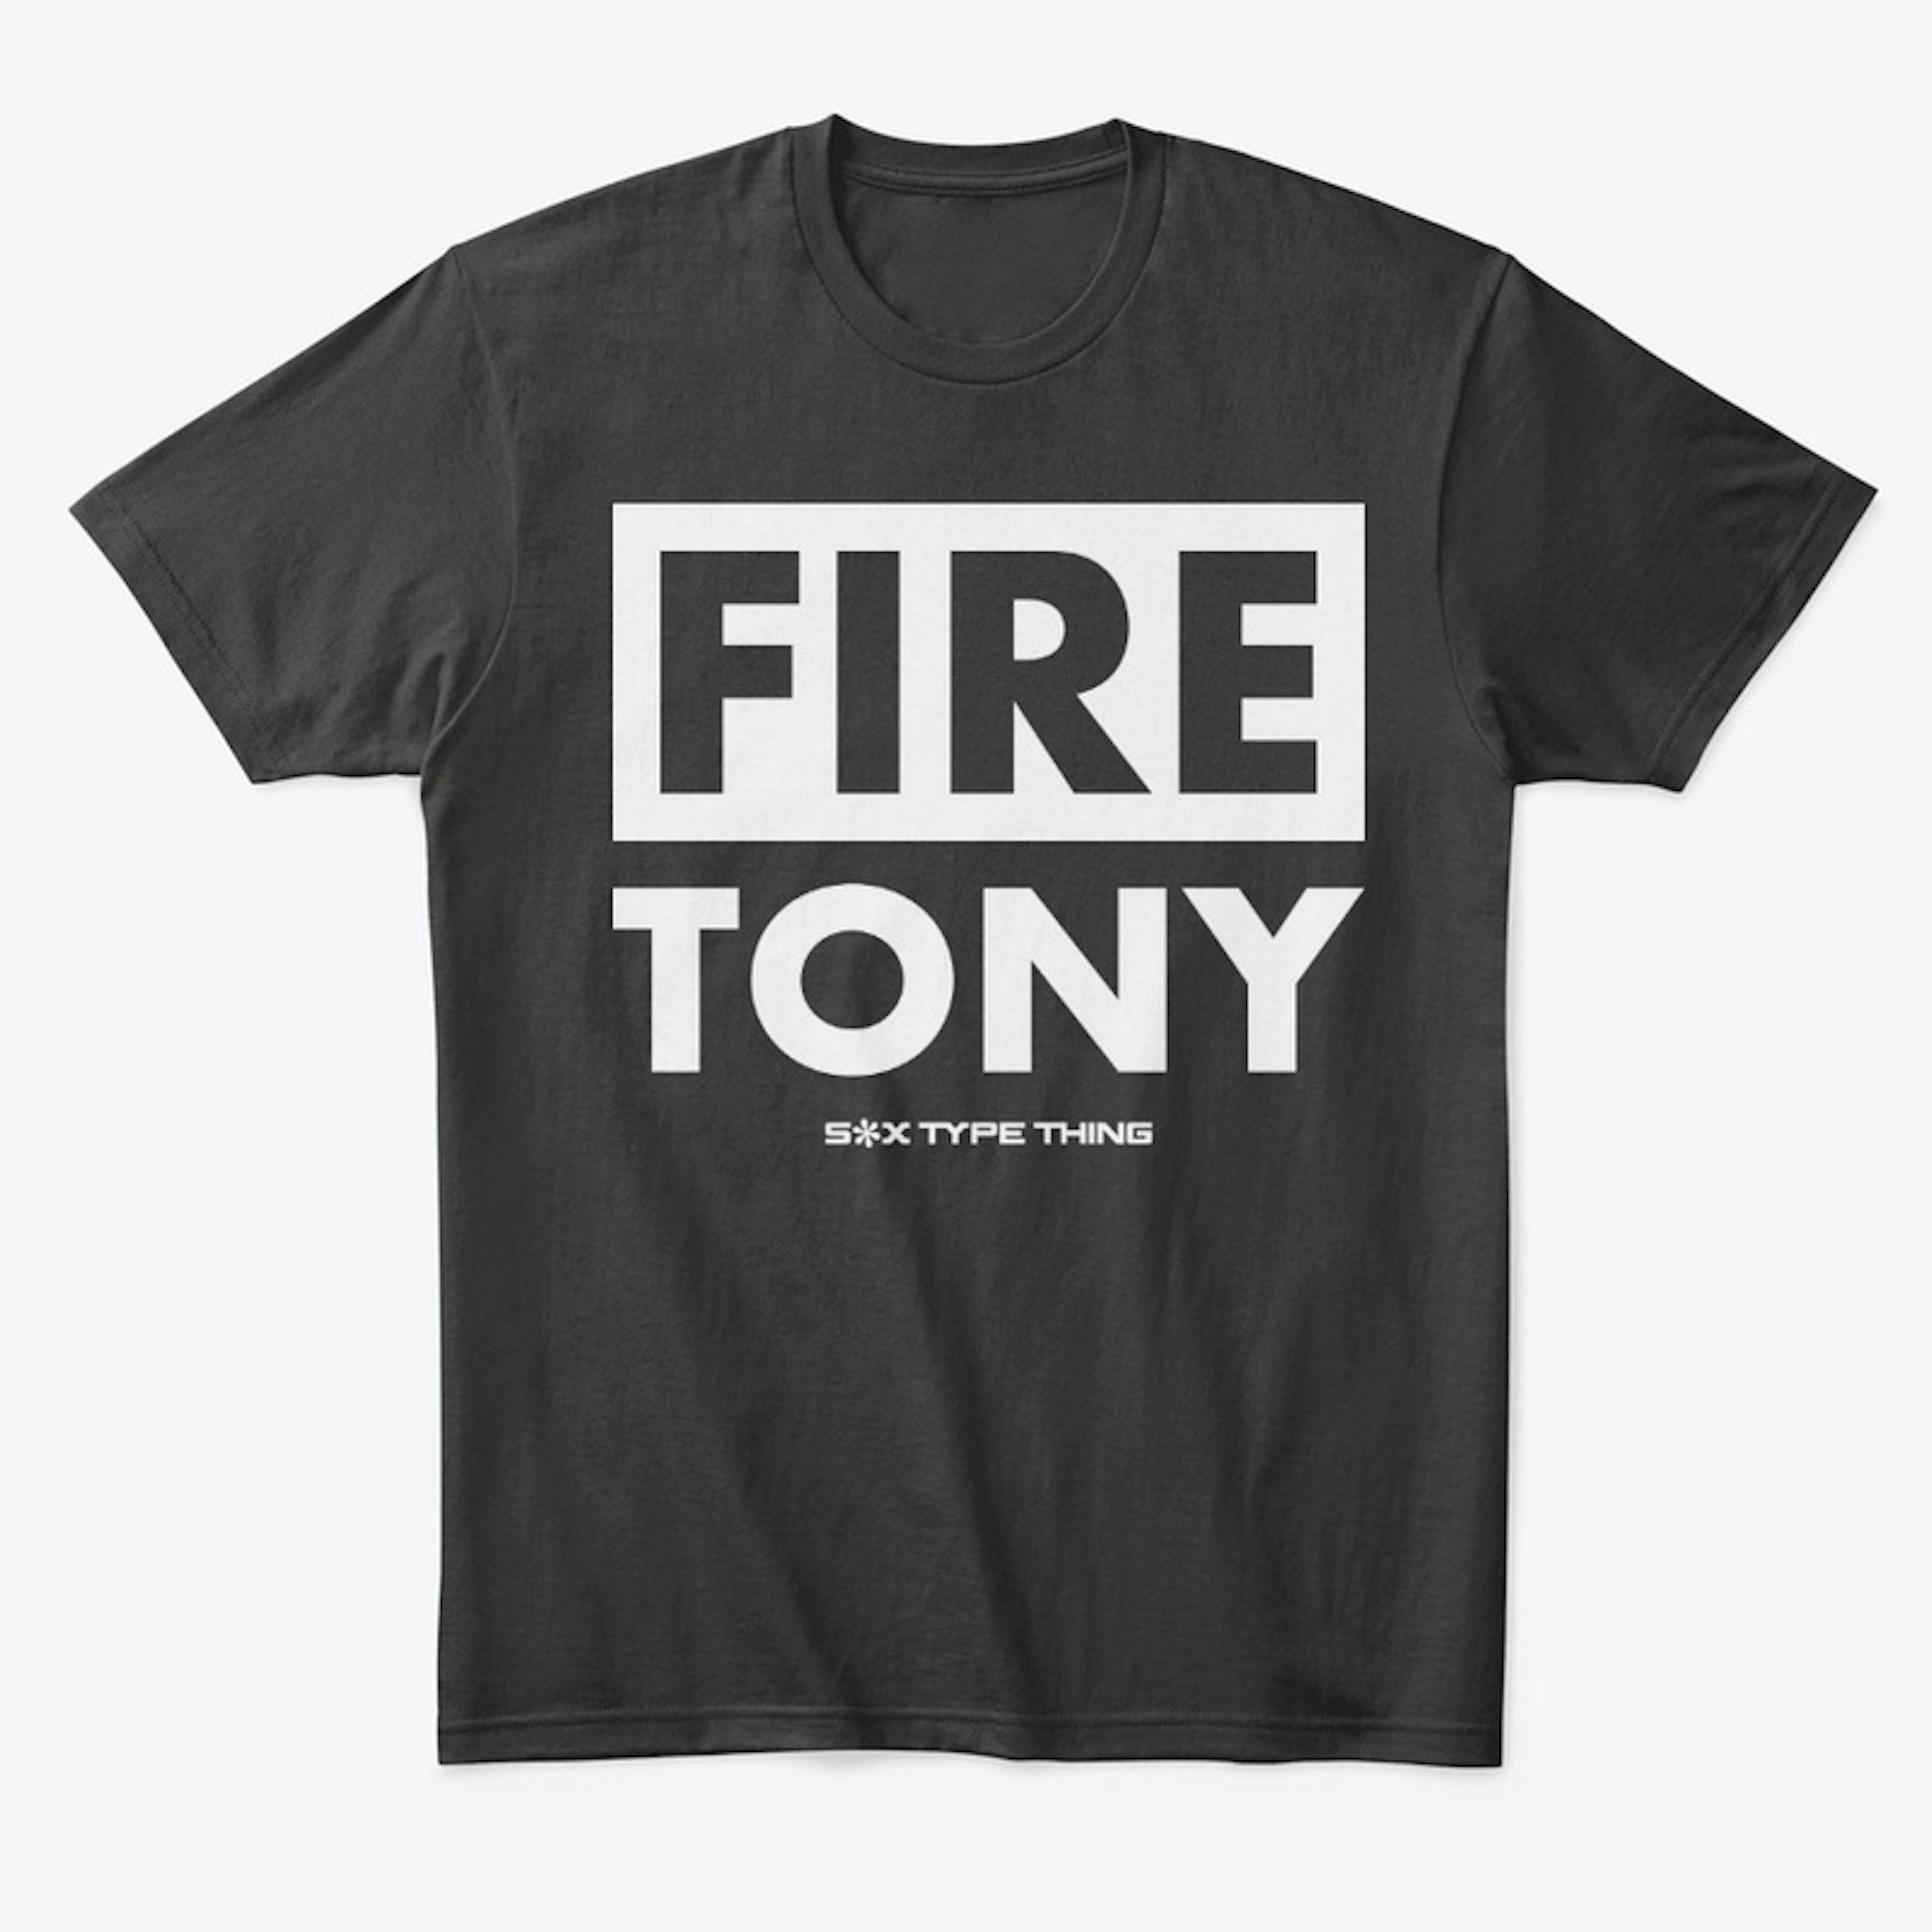 FIRE TONY